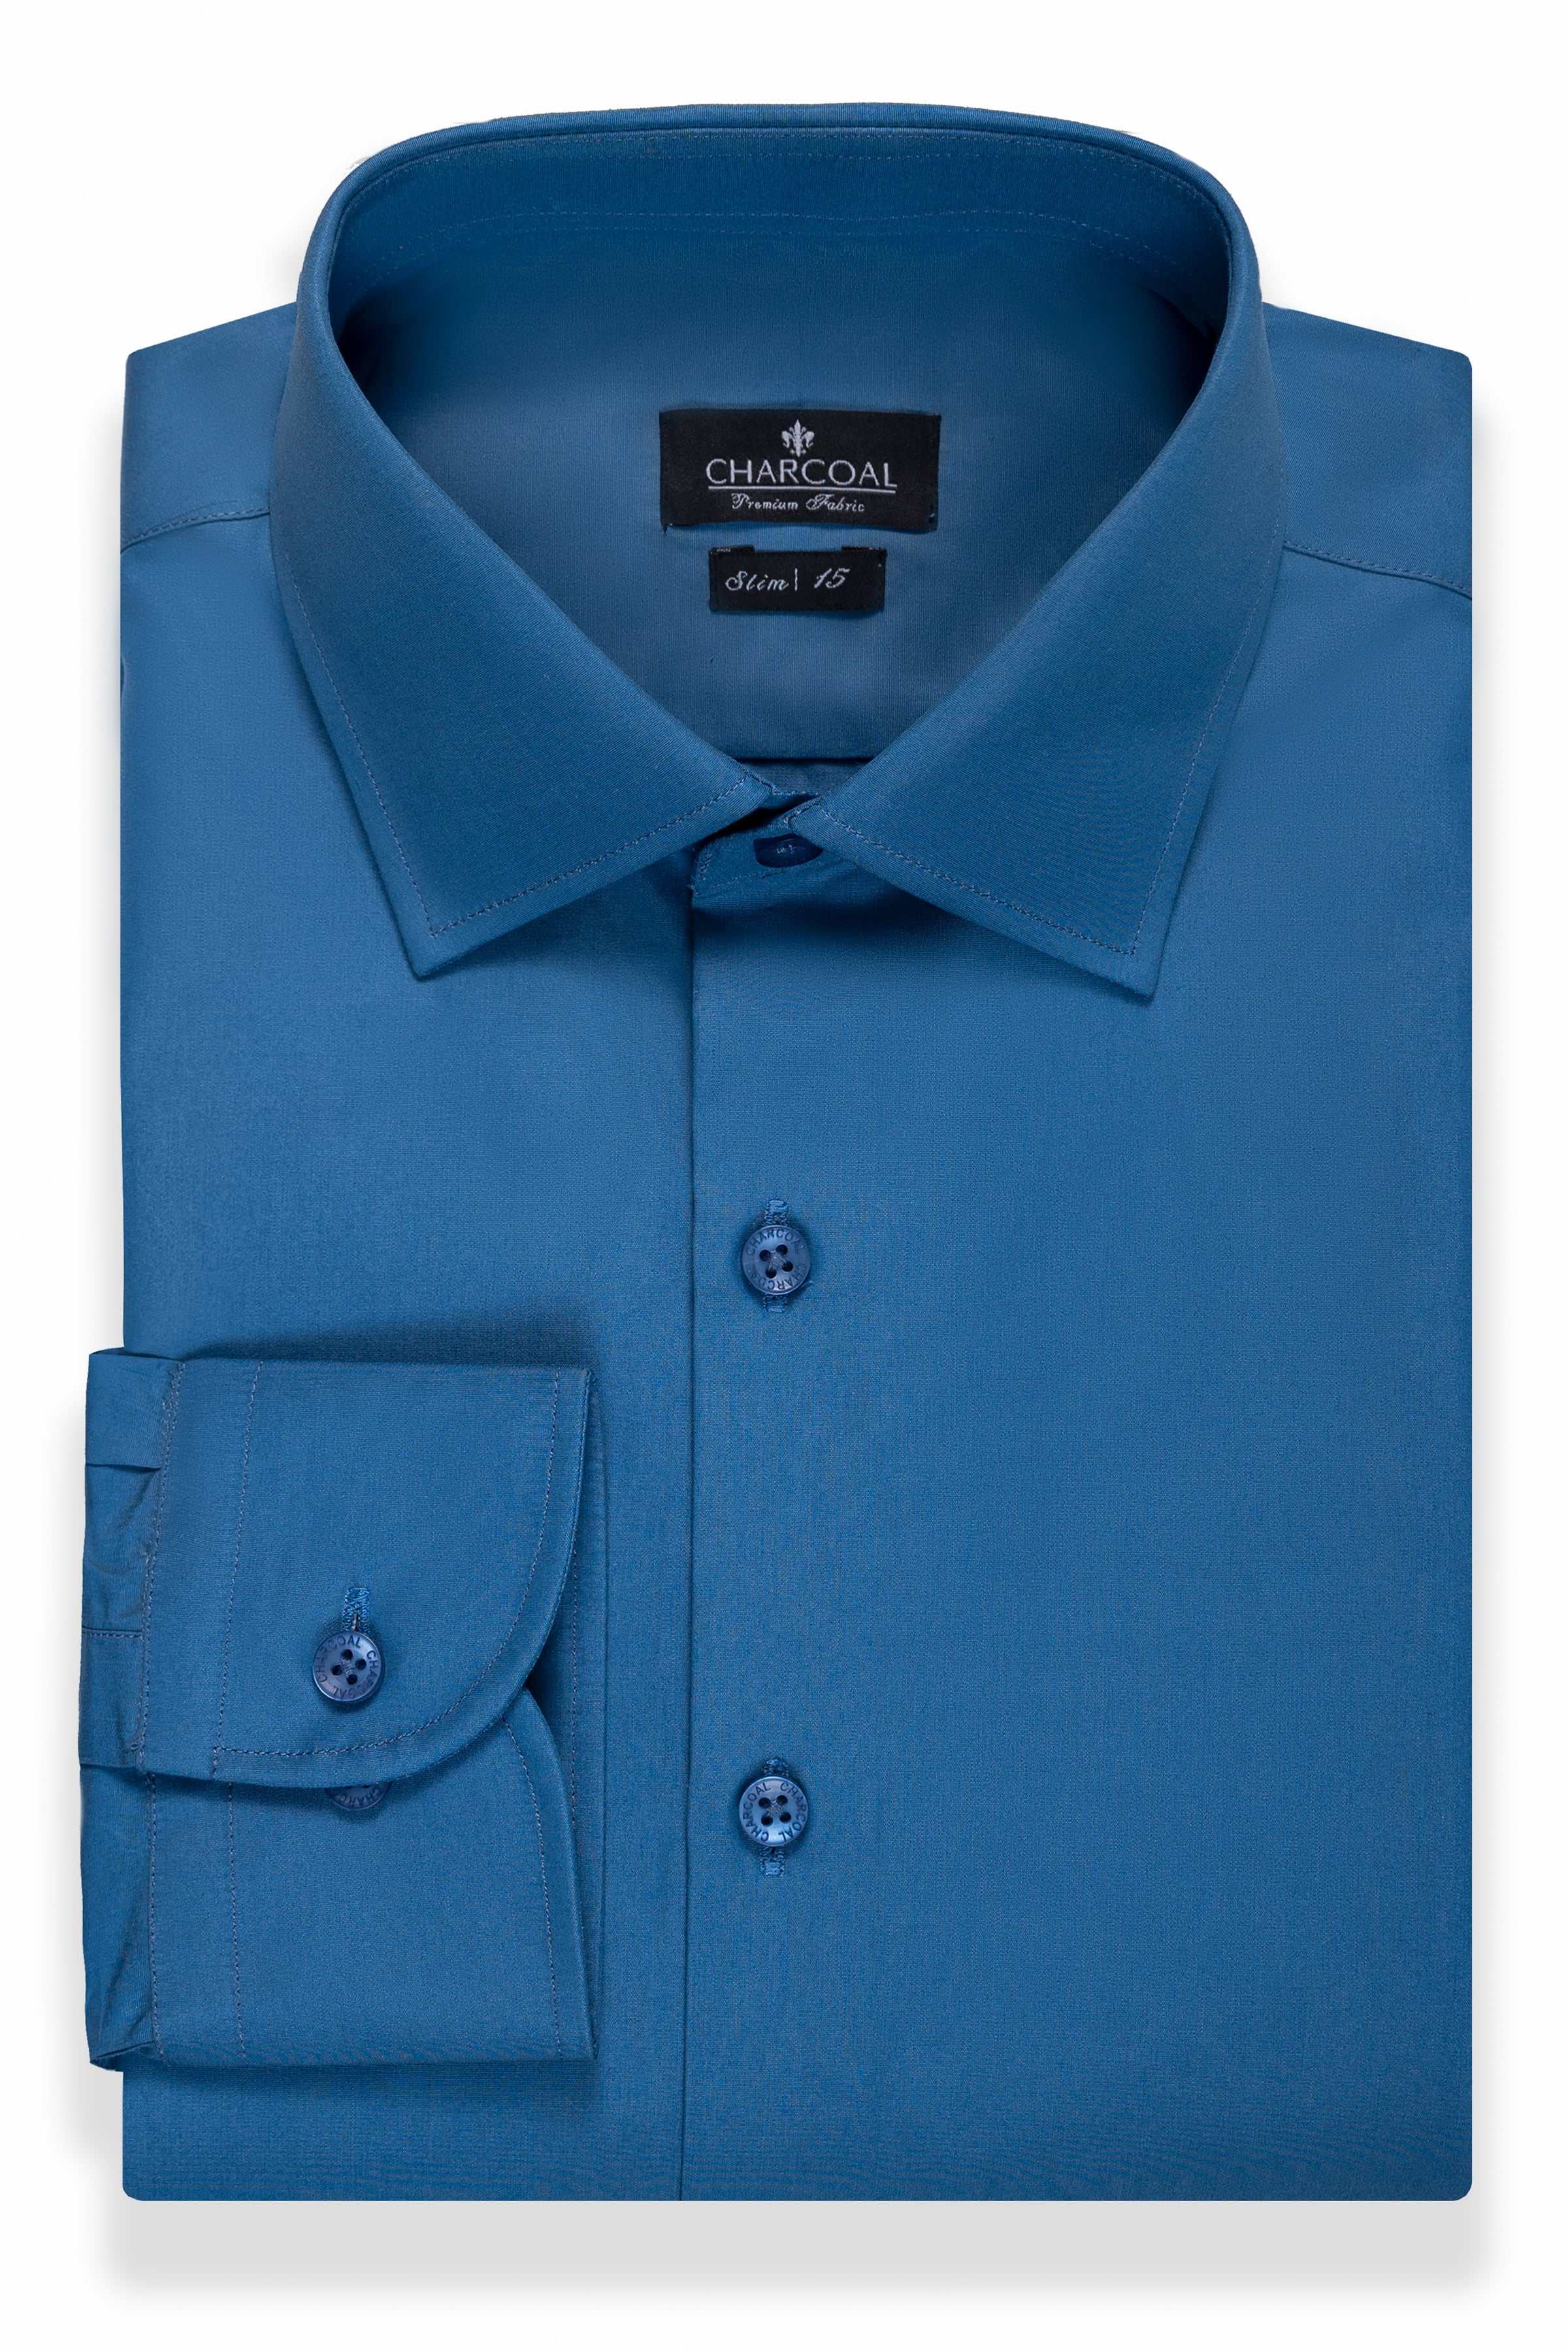 DRESS SHIRT BLUE GREY at Charcoal Clothing